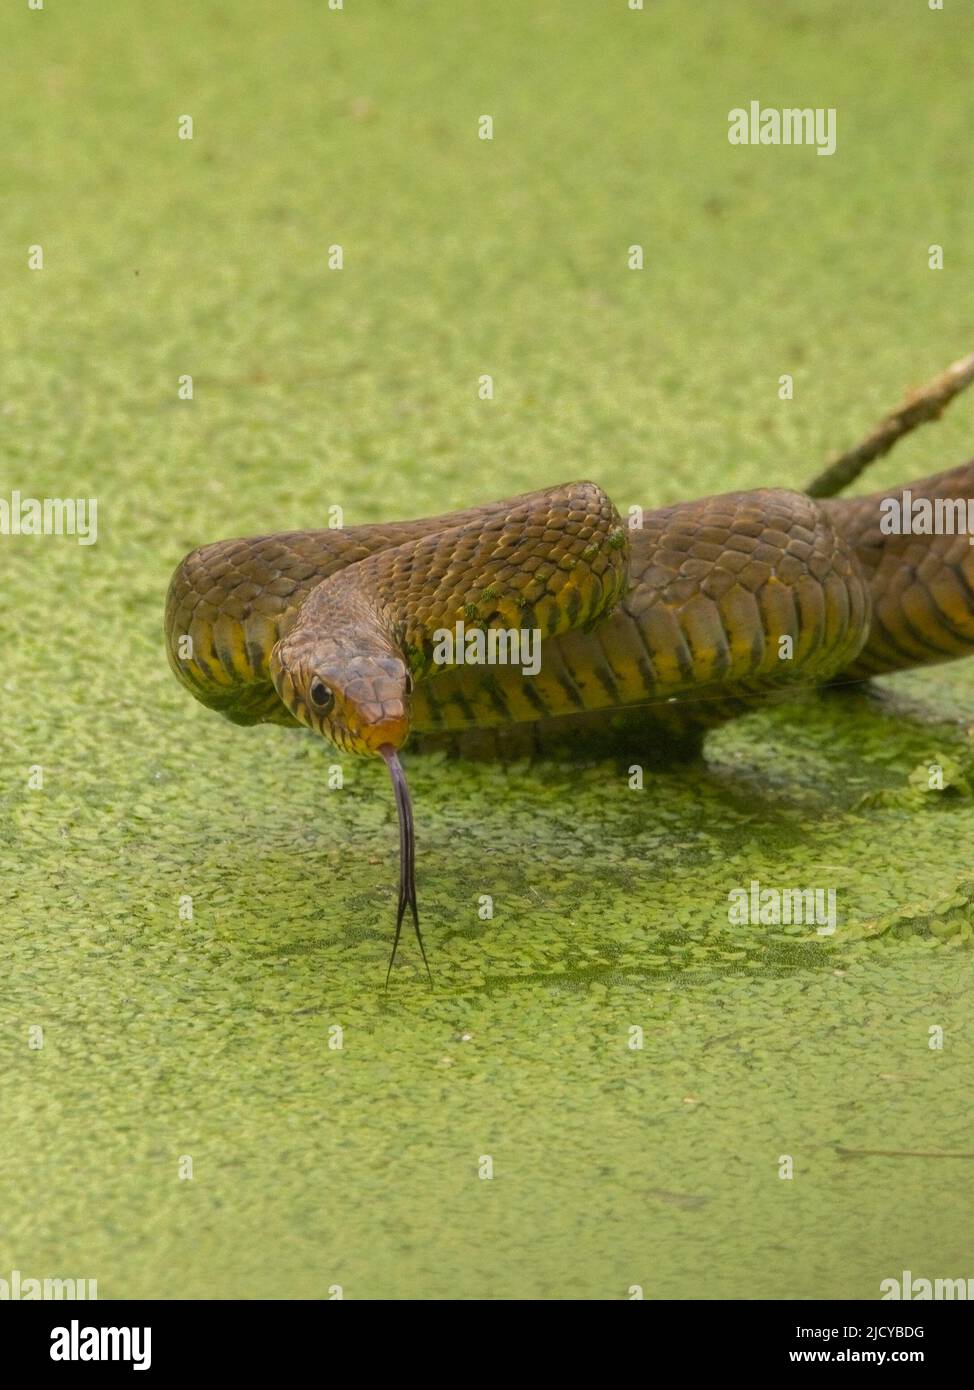 Indian Rat snake (Ptyas mucosa) Stock Photo